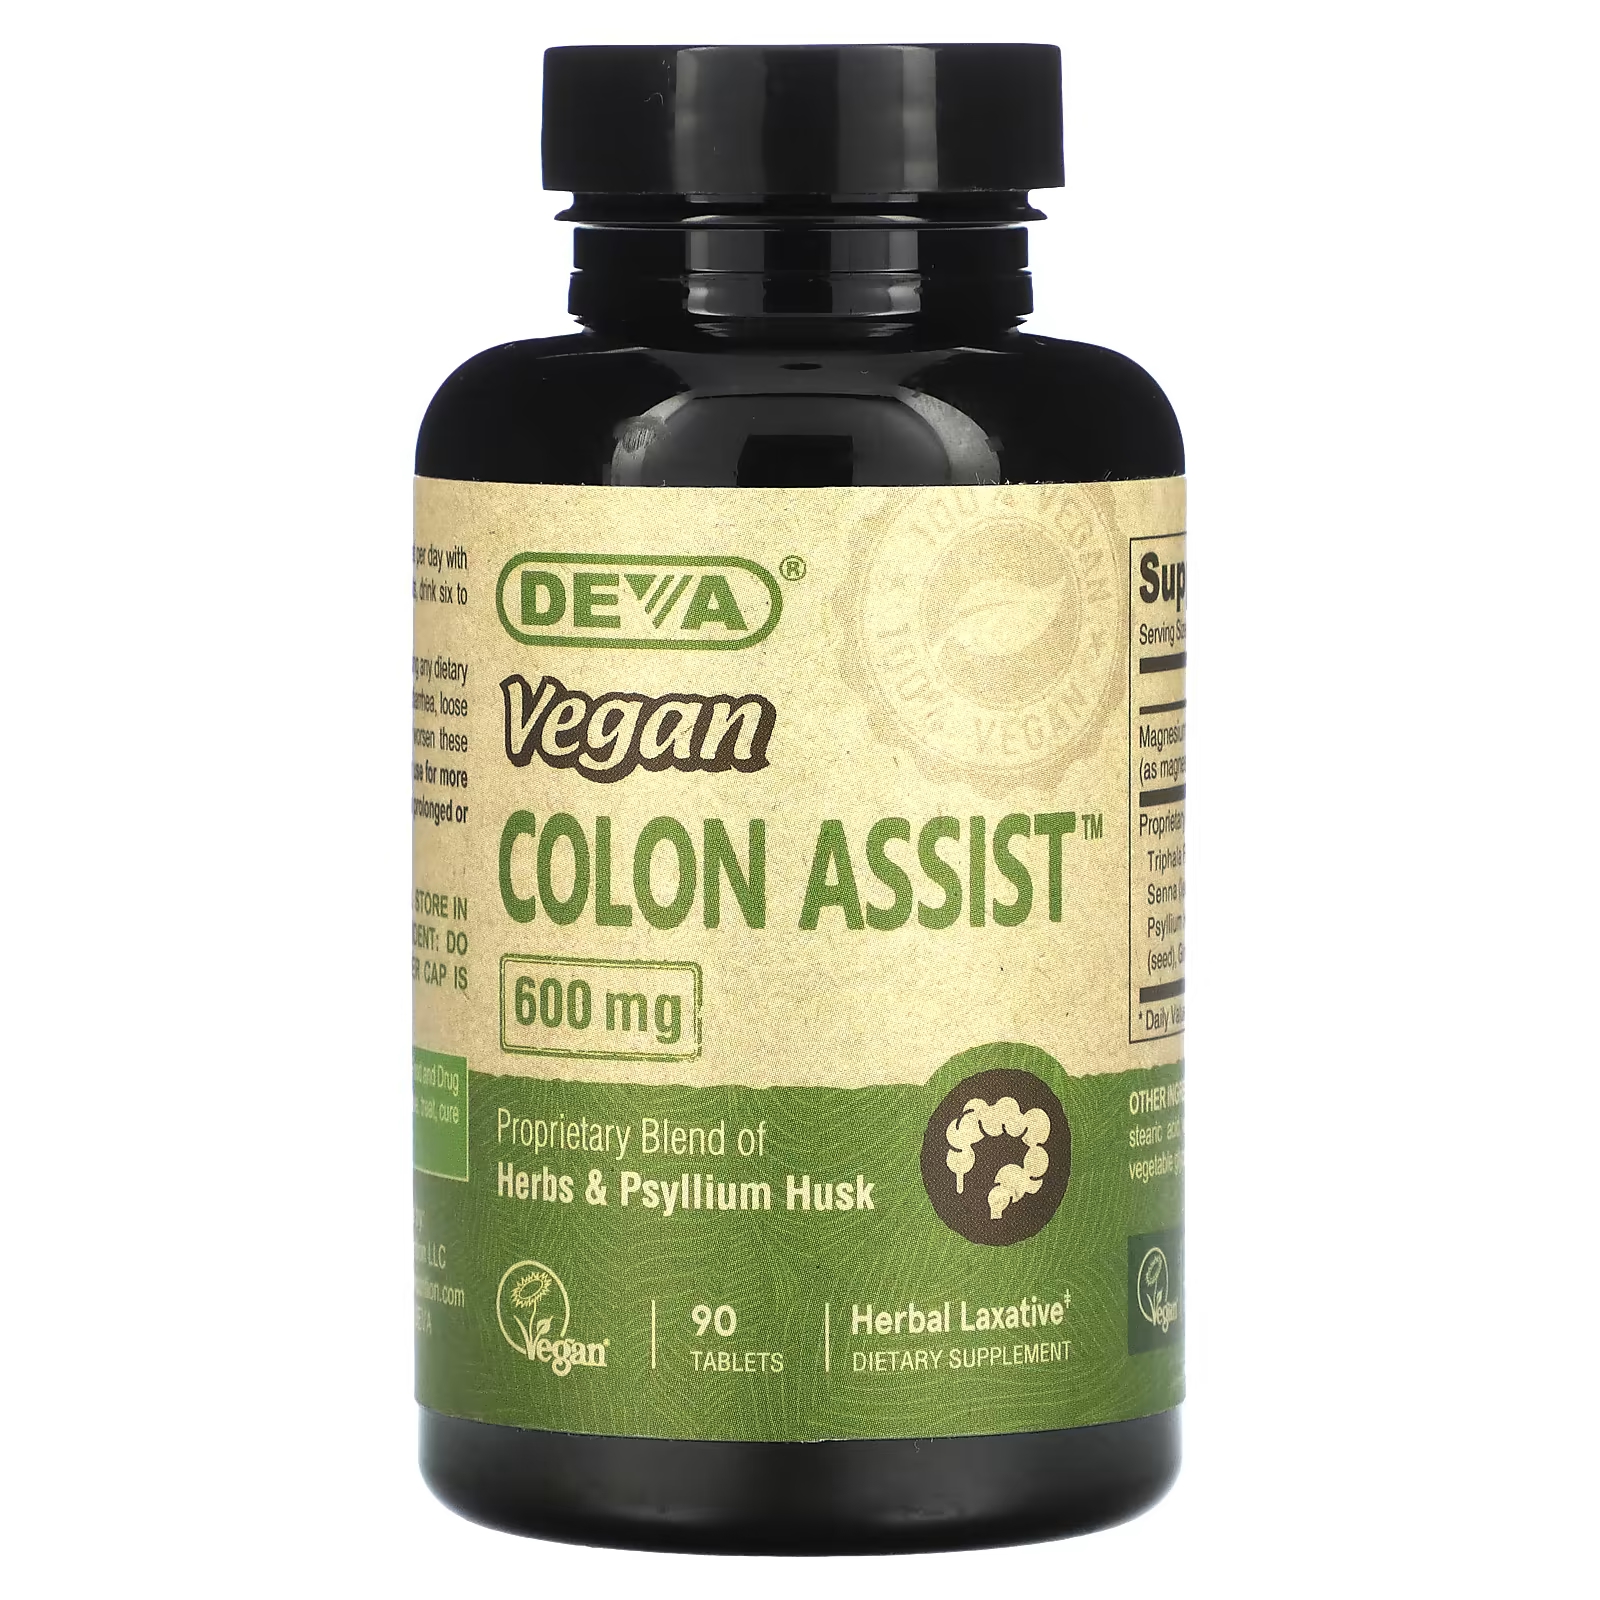 Пищевая добавка Deva Vegan Colon Assist 600 мг, 90 таблеток пищевая добавка deva vegan colon assist 600 мг 90 таблеток